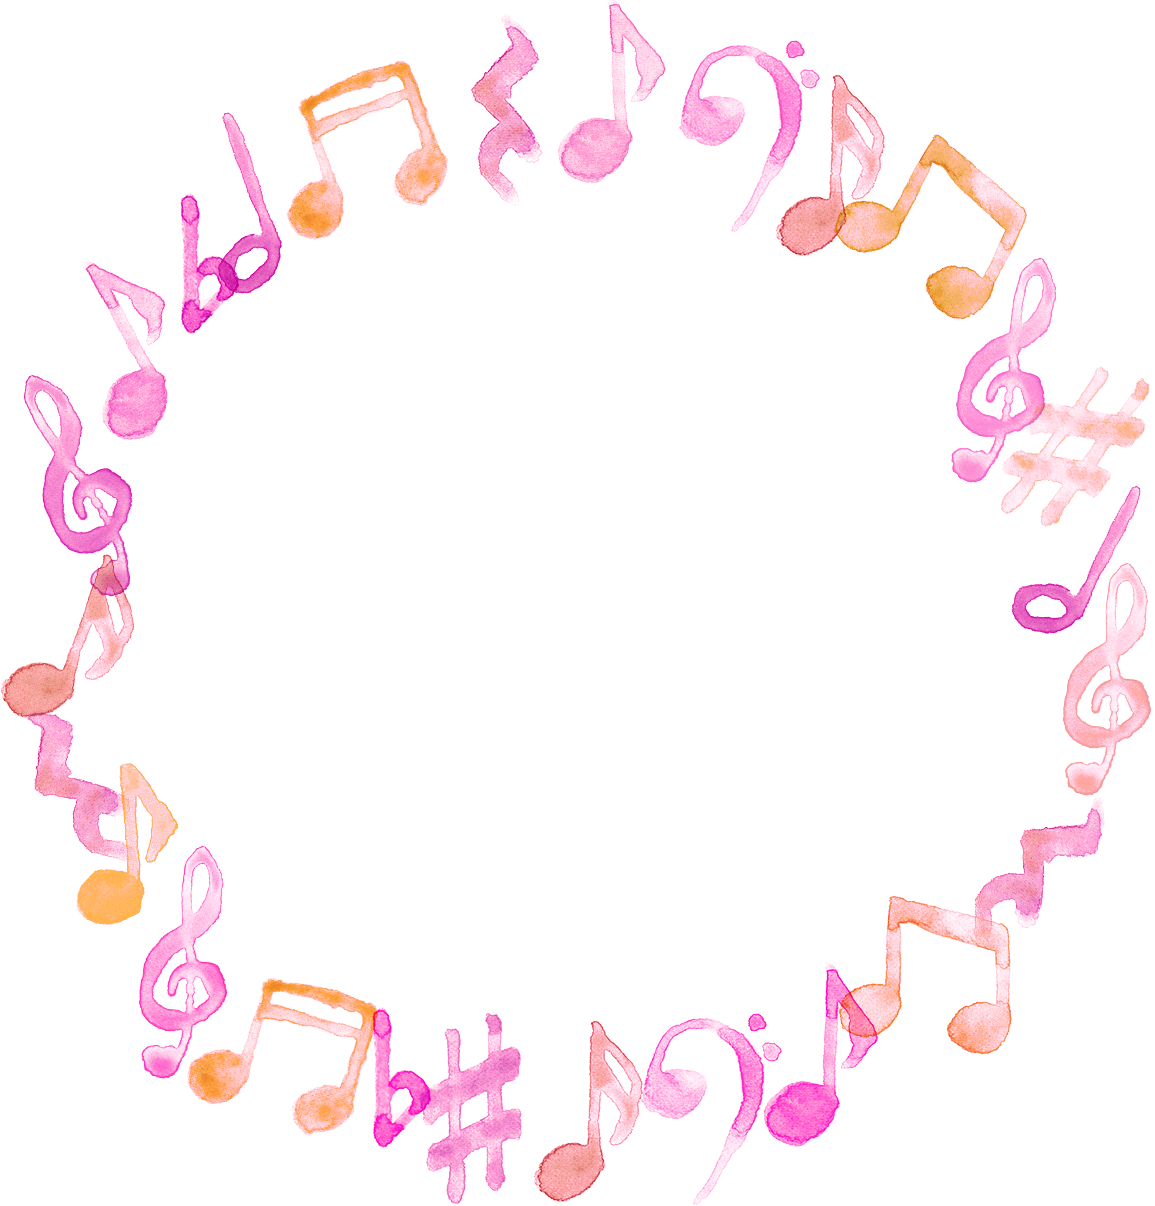 可愛いイラスト無料 音符 音楽 フレーム ピンク色 公式 イラスト素材サイト イラストダウンロード